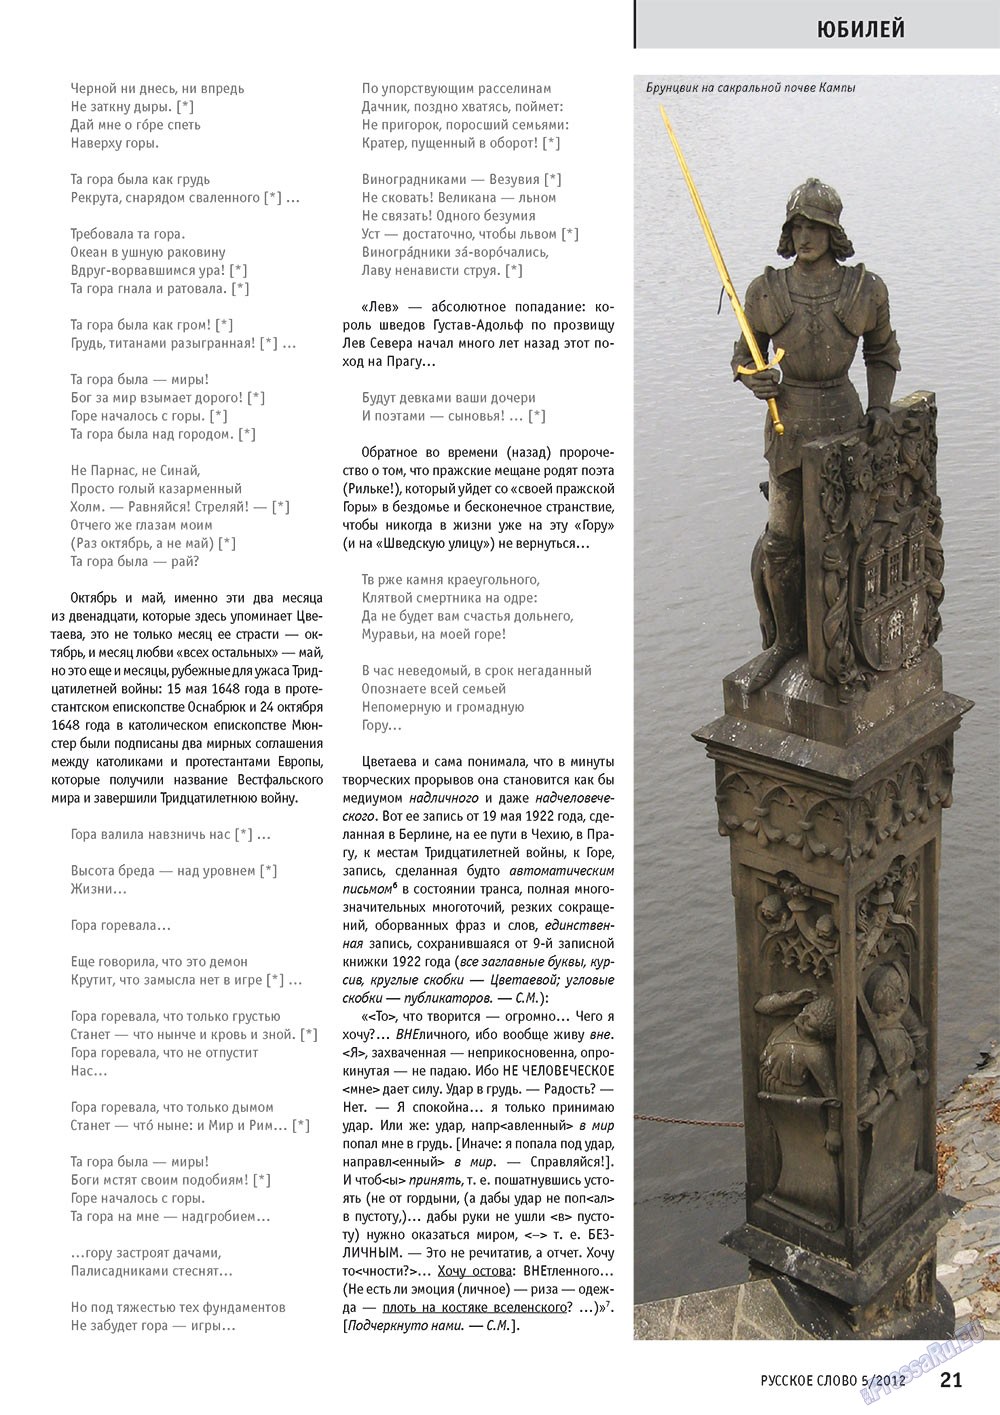 Русское слово (журнал). 2012 год, номер 5, стр. 21